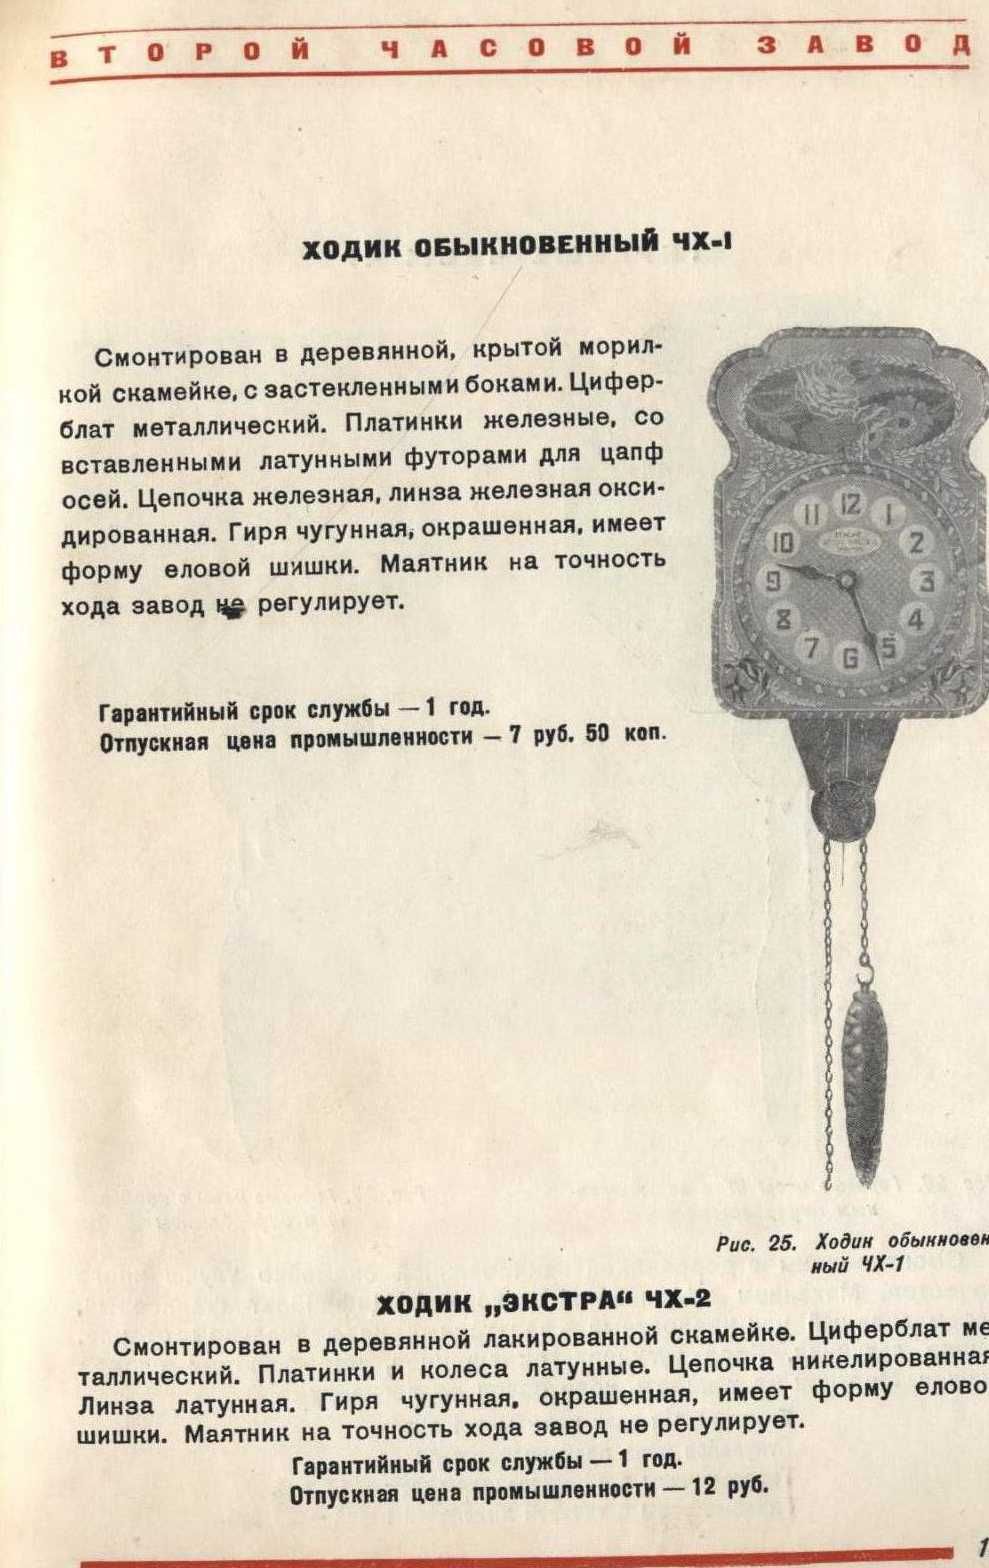 Часы и часовая фурнитура КАТАЛОГИЗДАТ НКОМ СССР 1940 ГЛАВПРИБОР